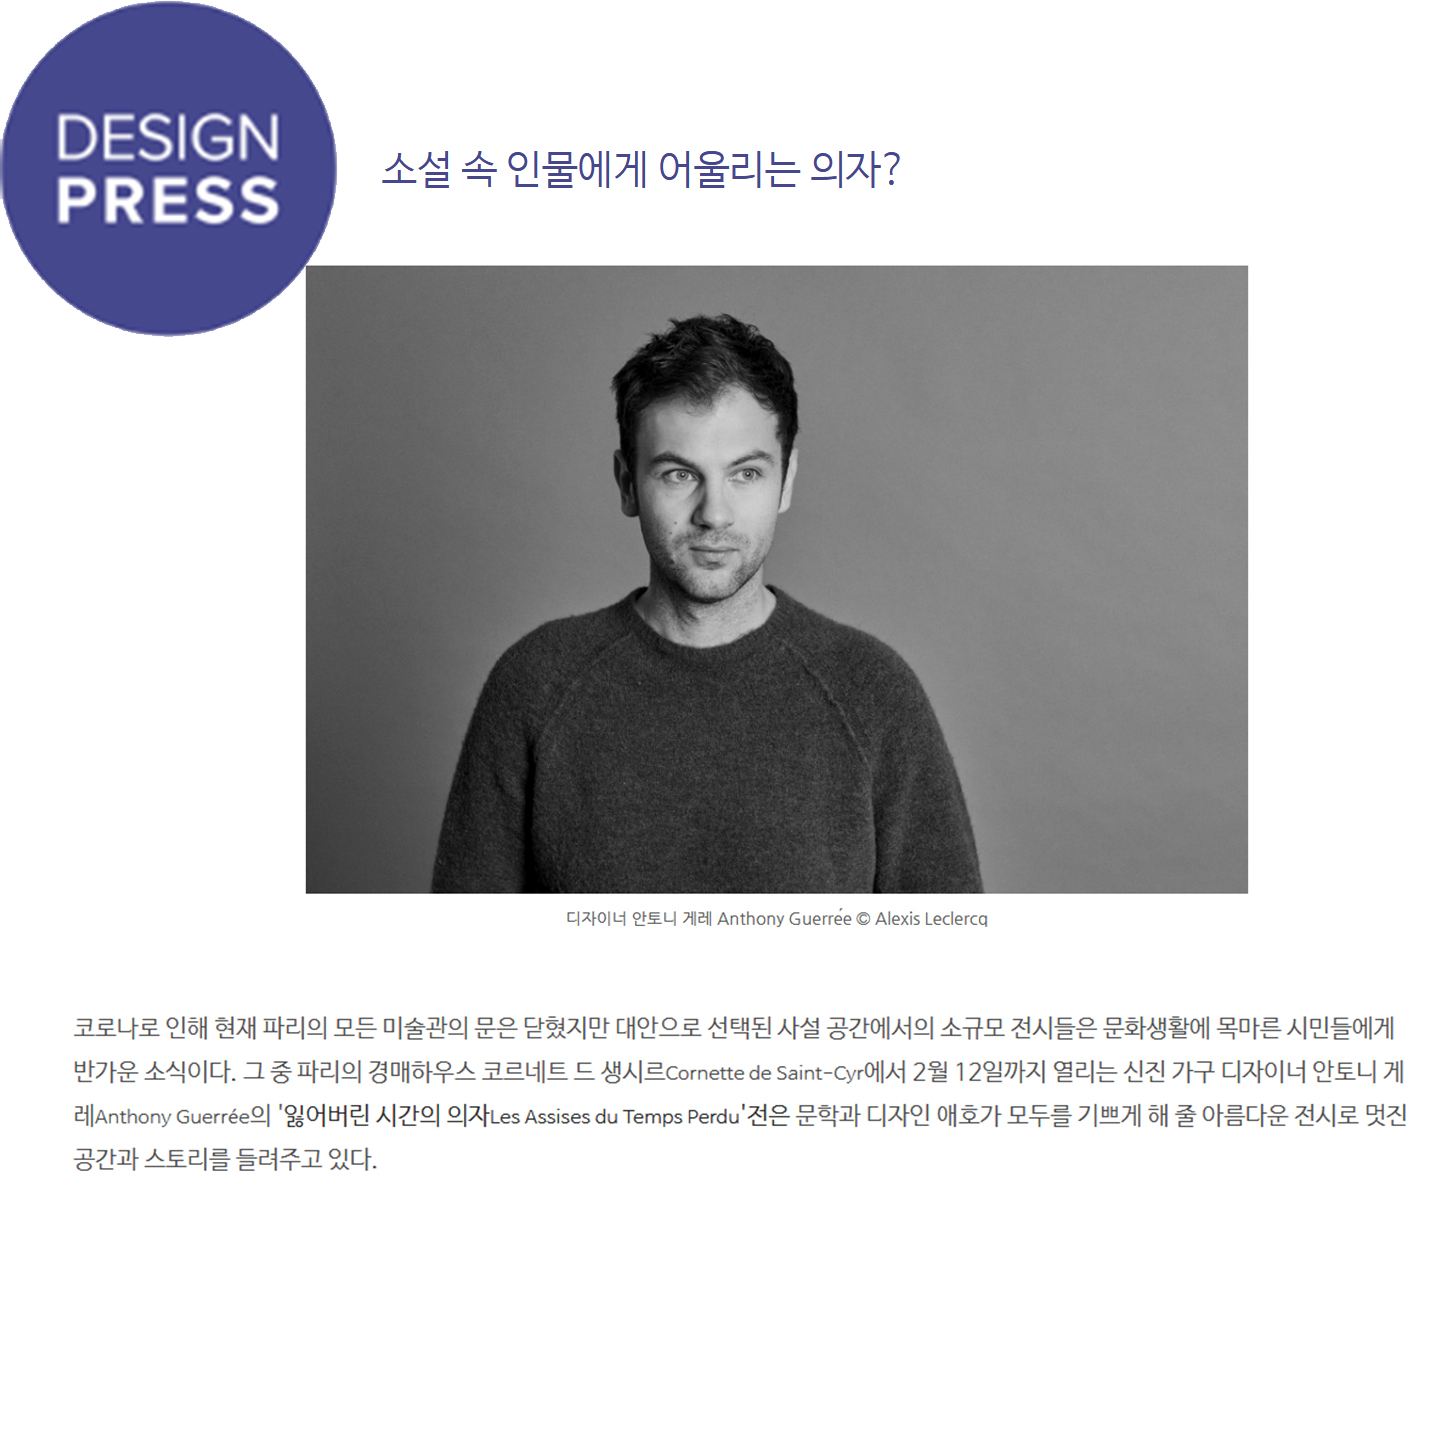 DESIGN PRESS KOREA (South Korea)